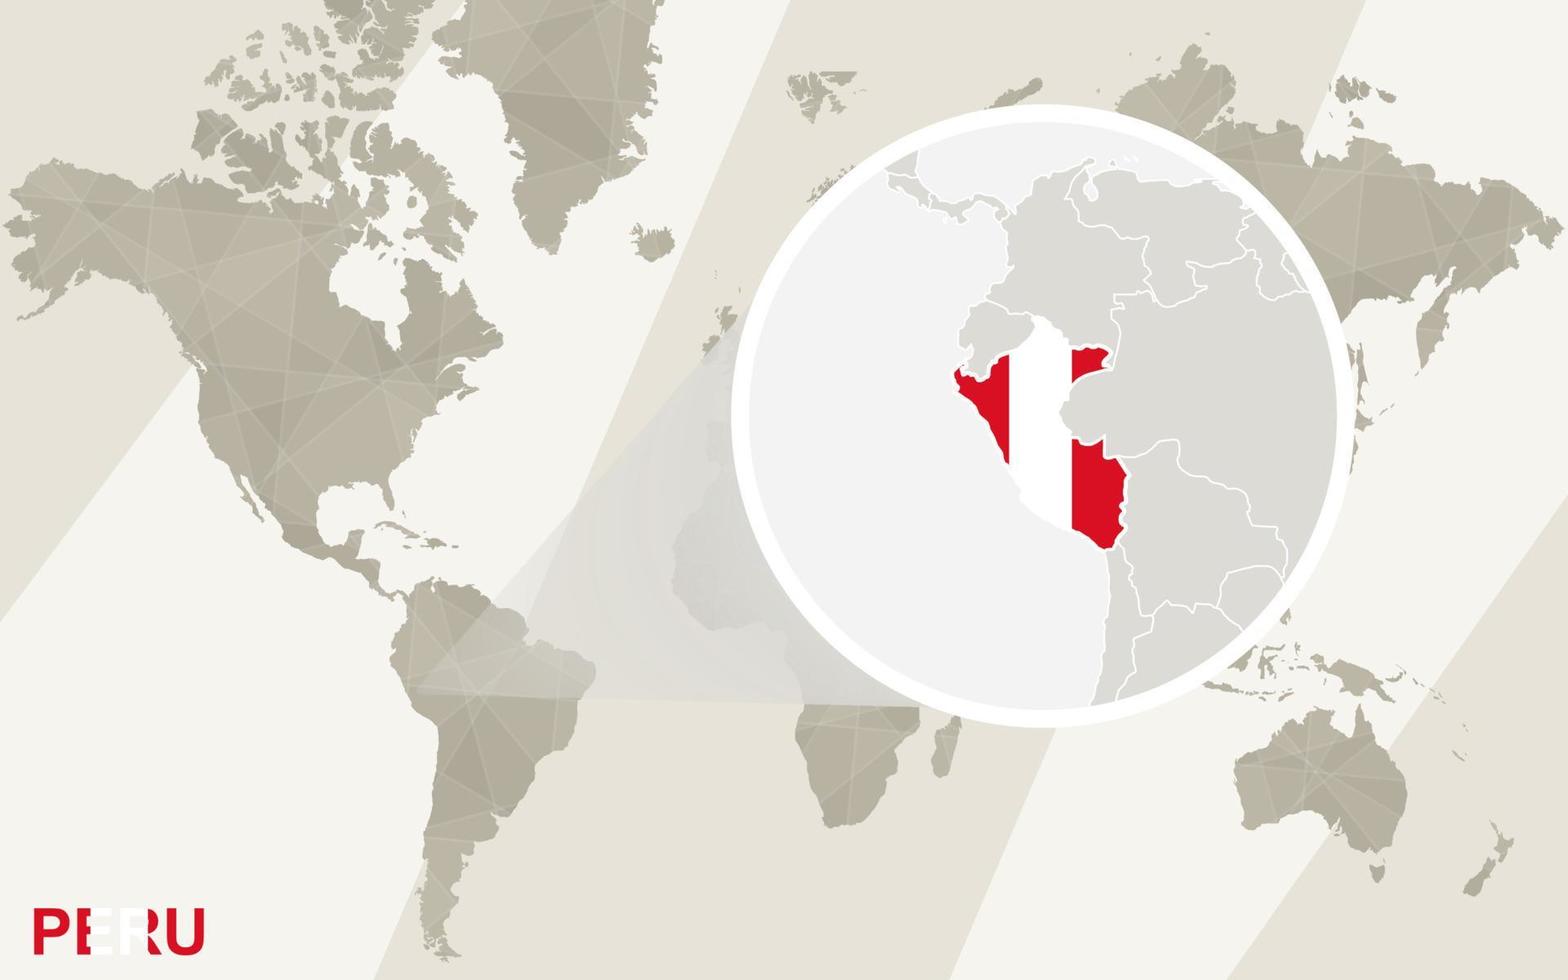 Zoom en el mapa y la bandera de Perú. mapa del mundo. vector